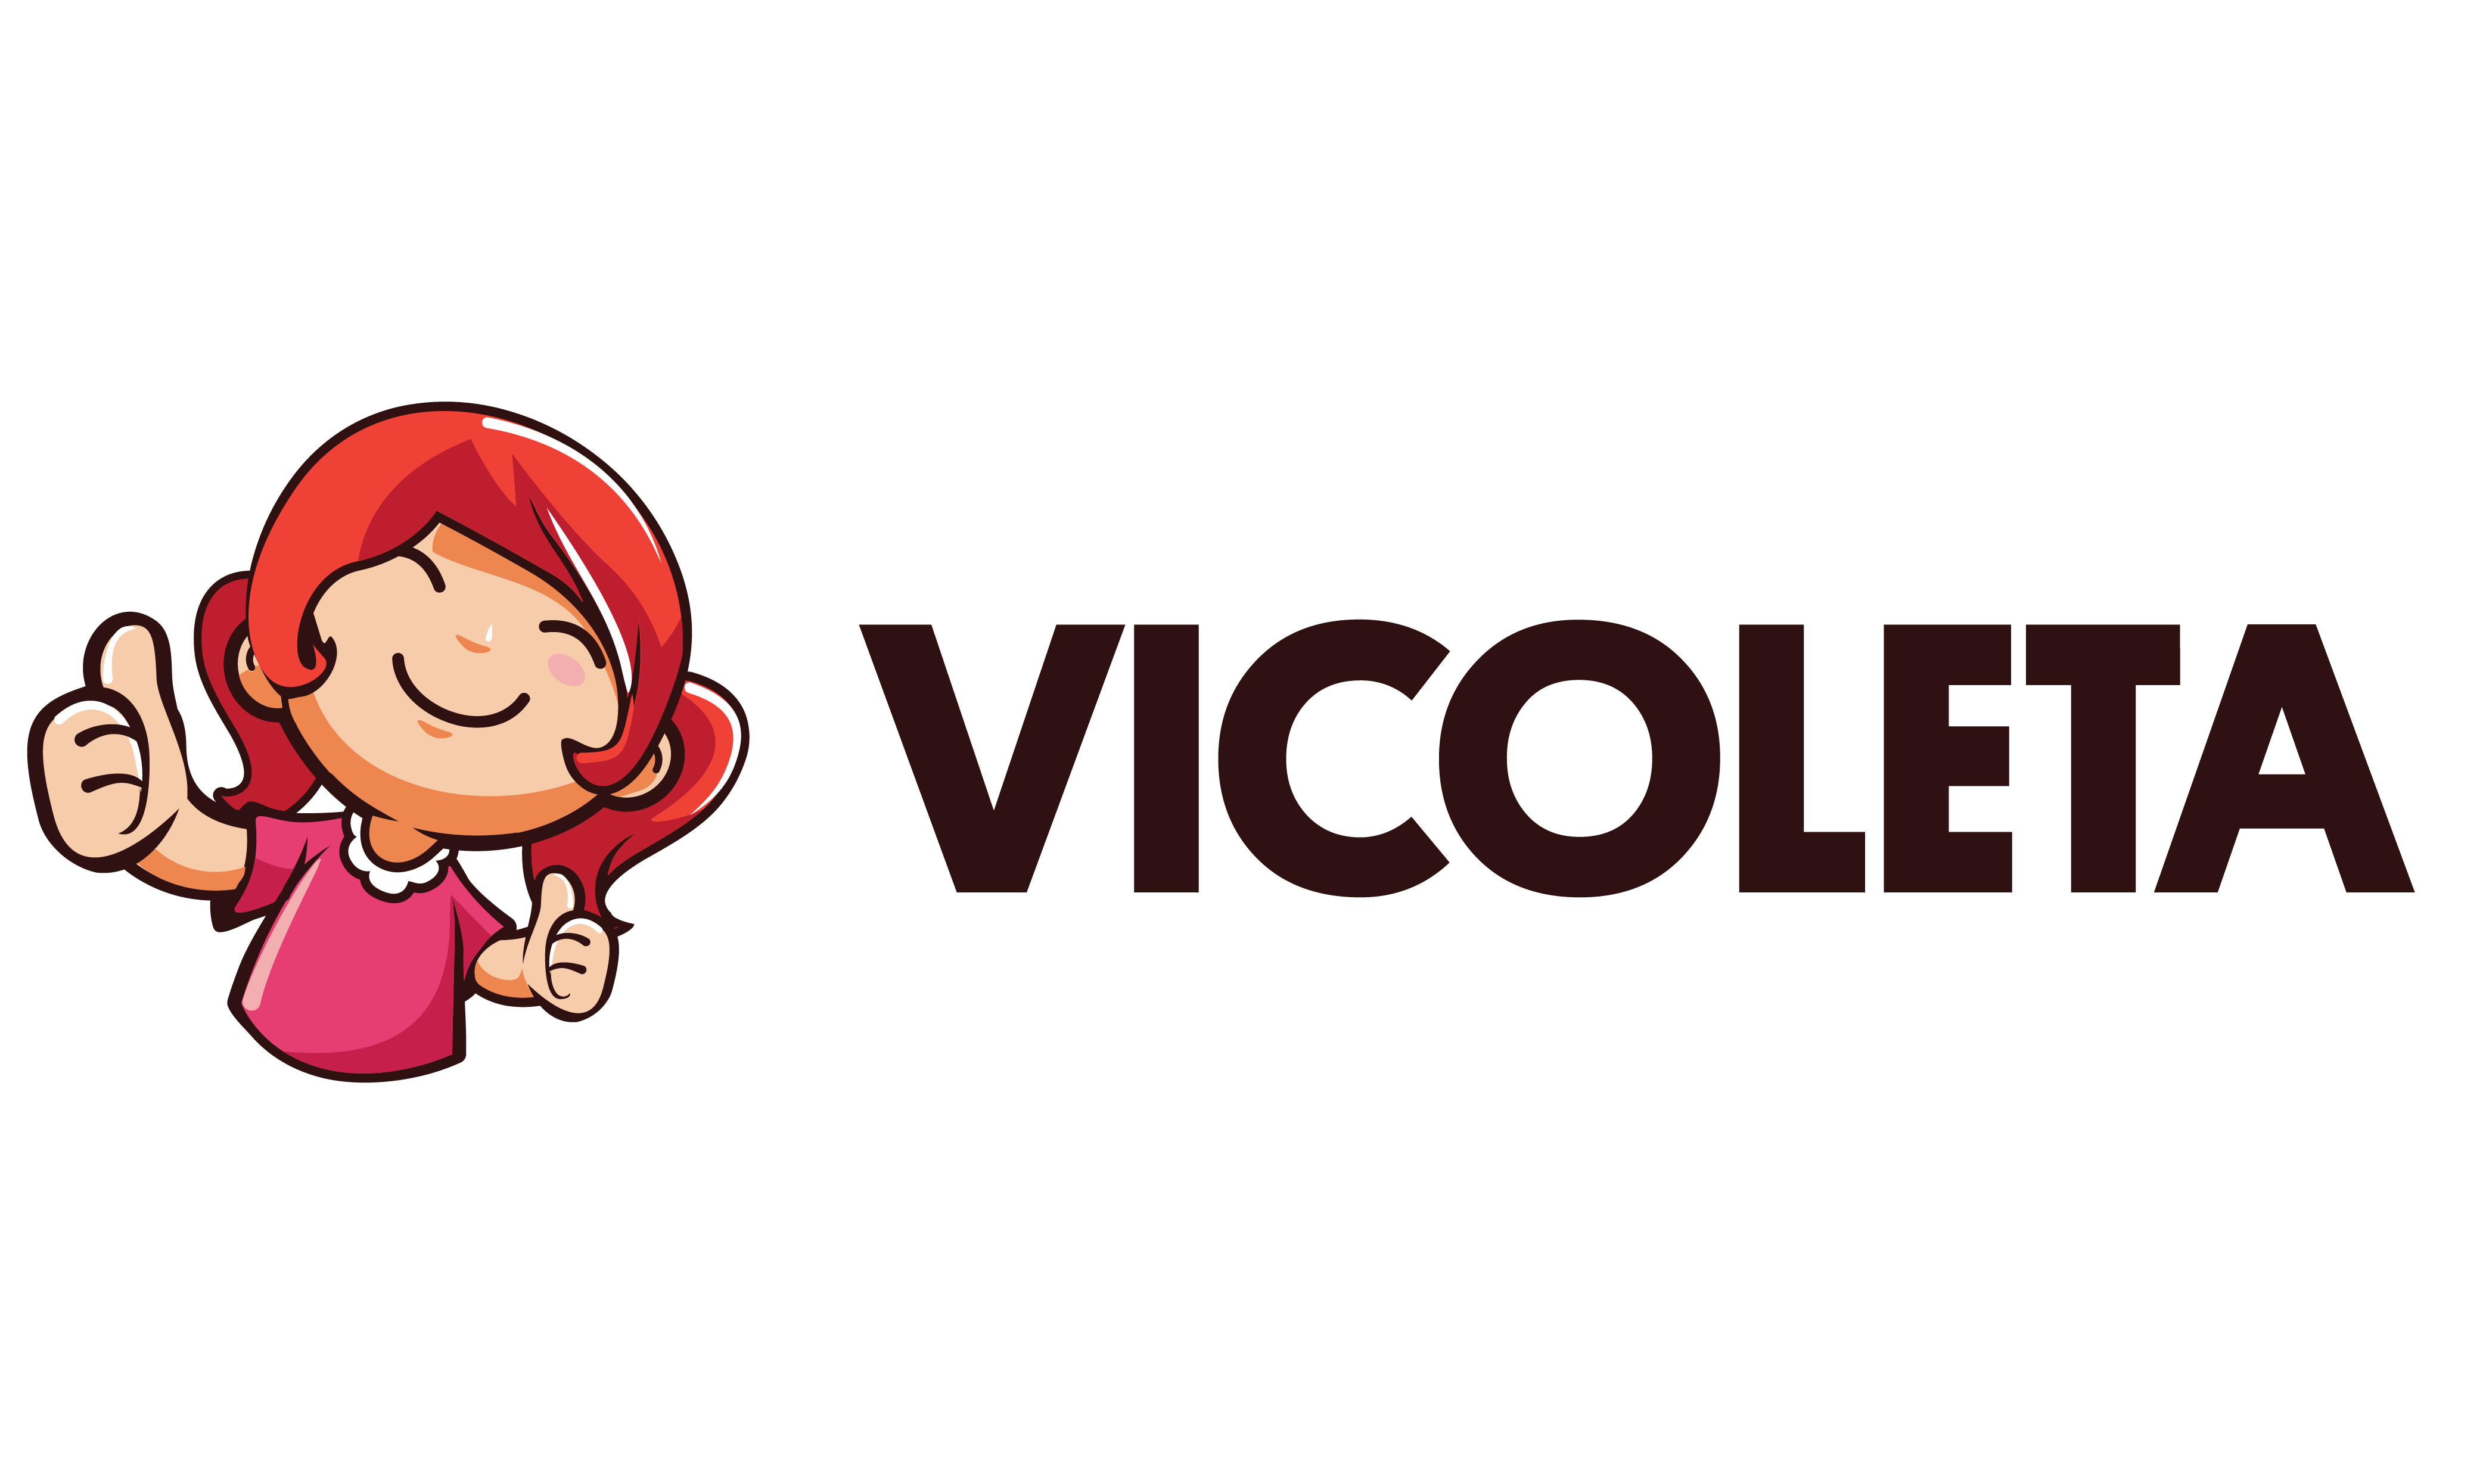 Vicoleta